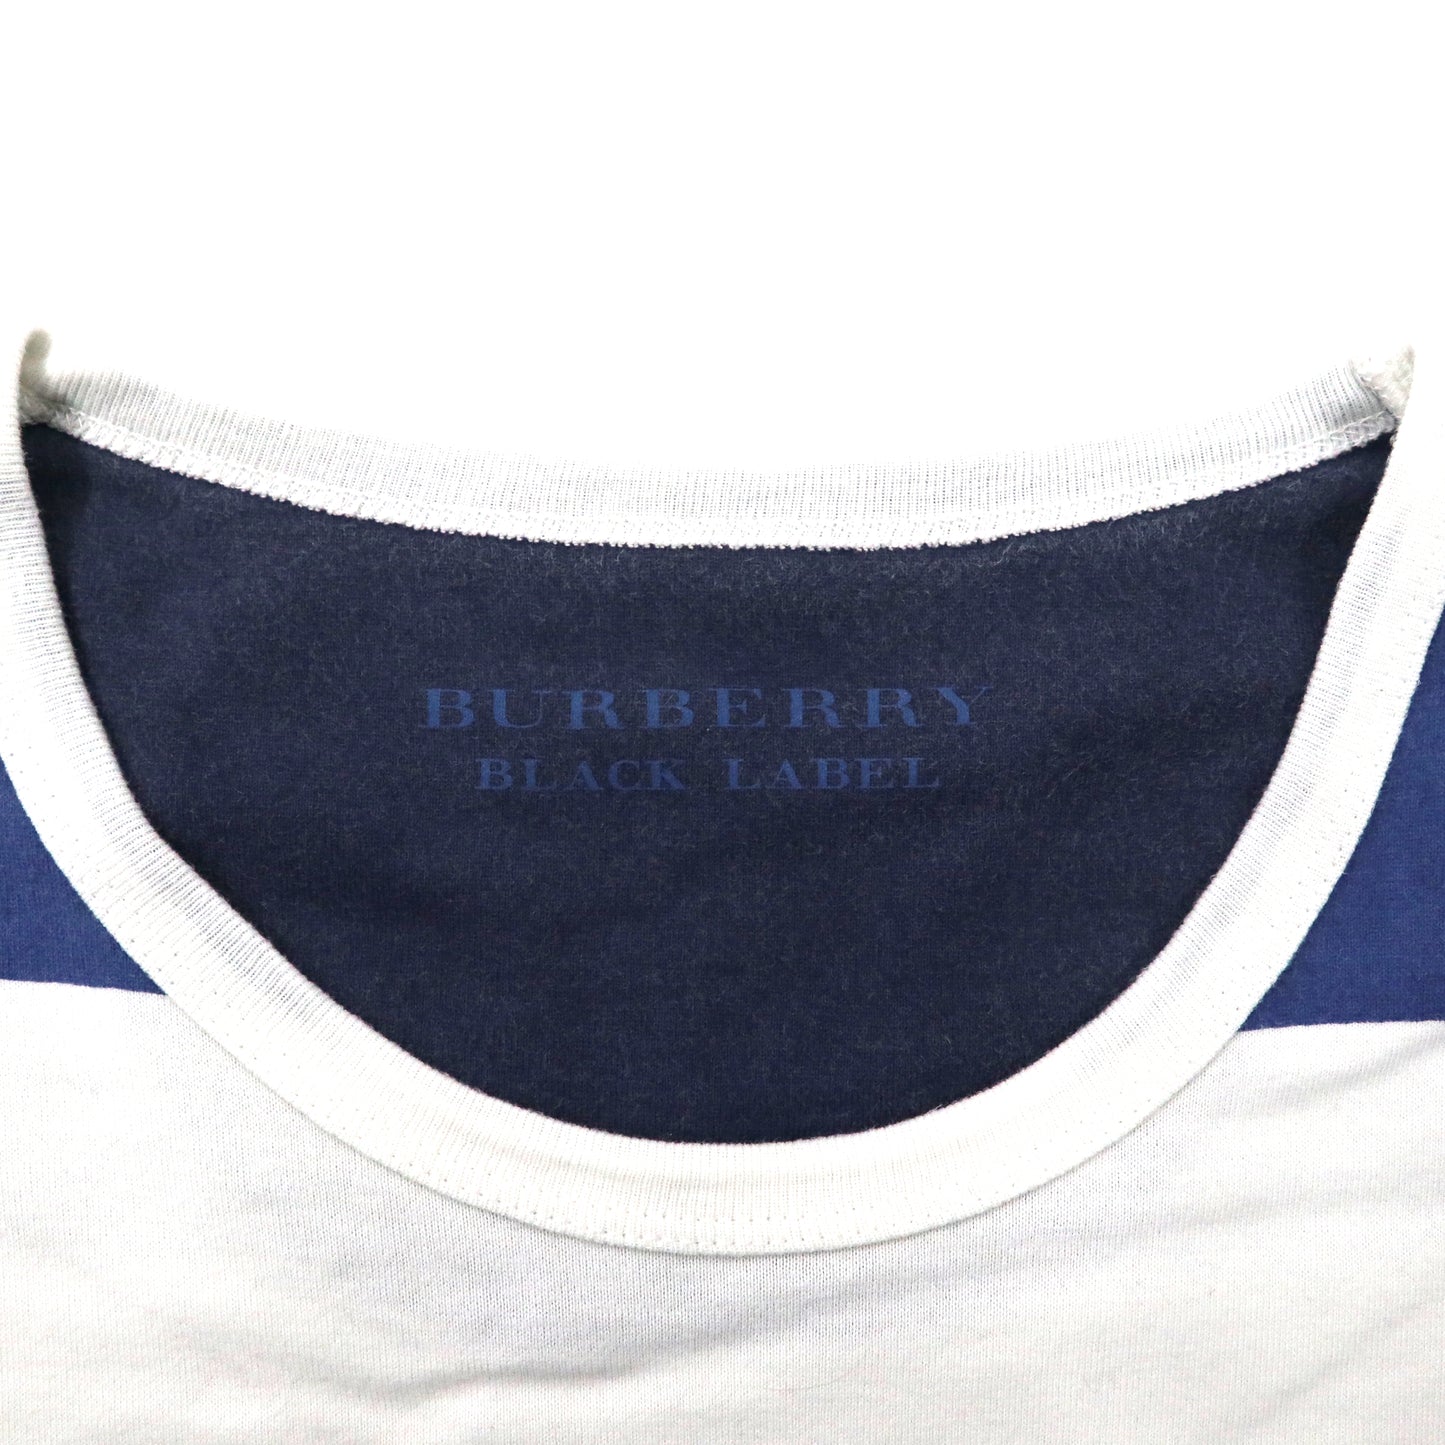 BURBERRY BLACK LABEL ボーダーTシャツ 3 ホワイト ネイビー コットン ワンポイントロゴ